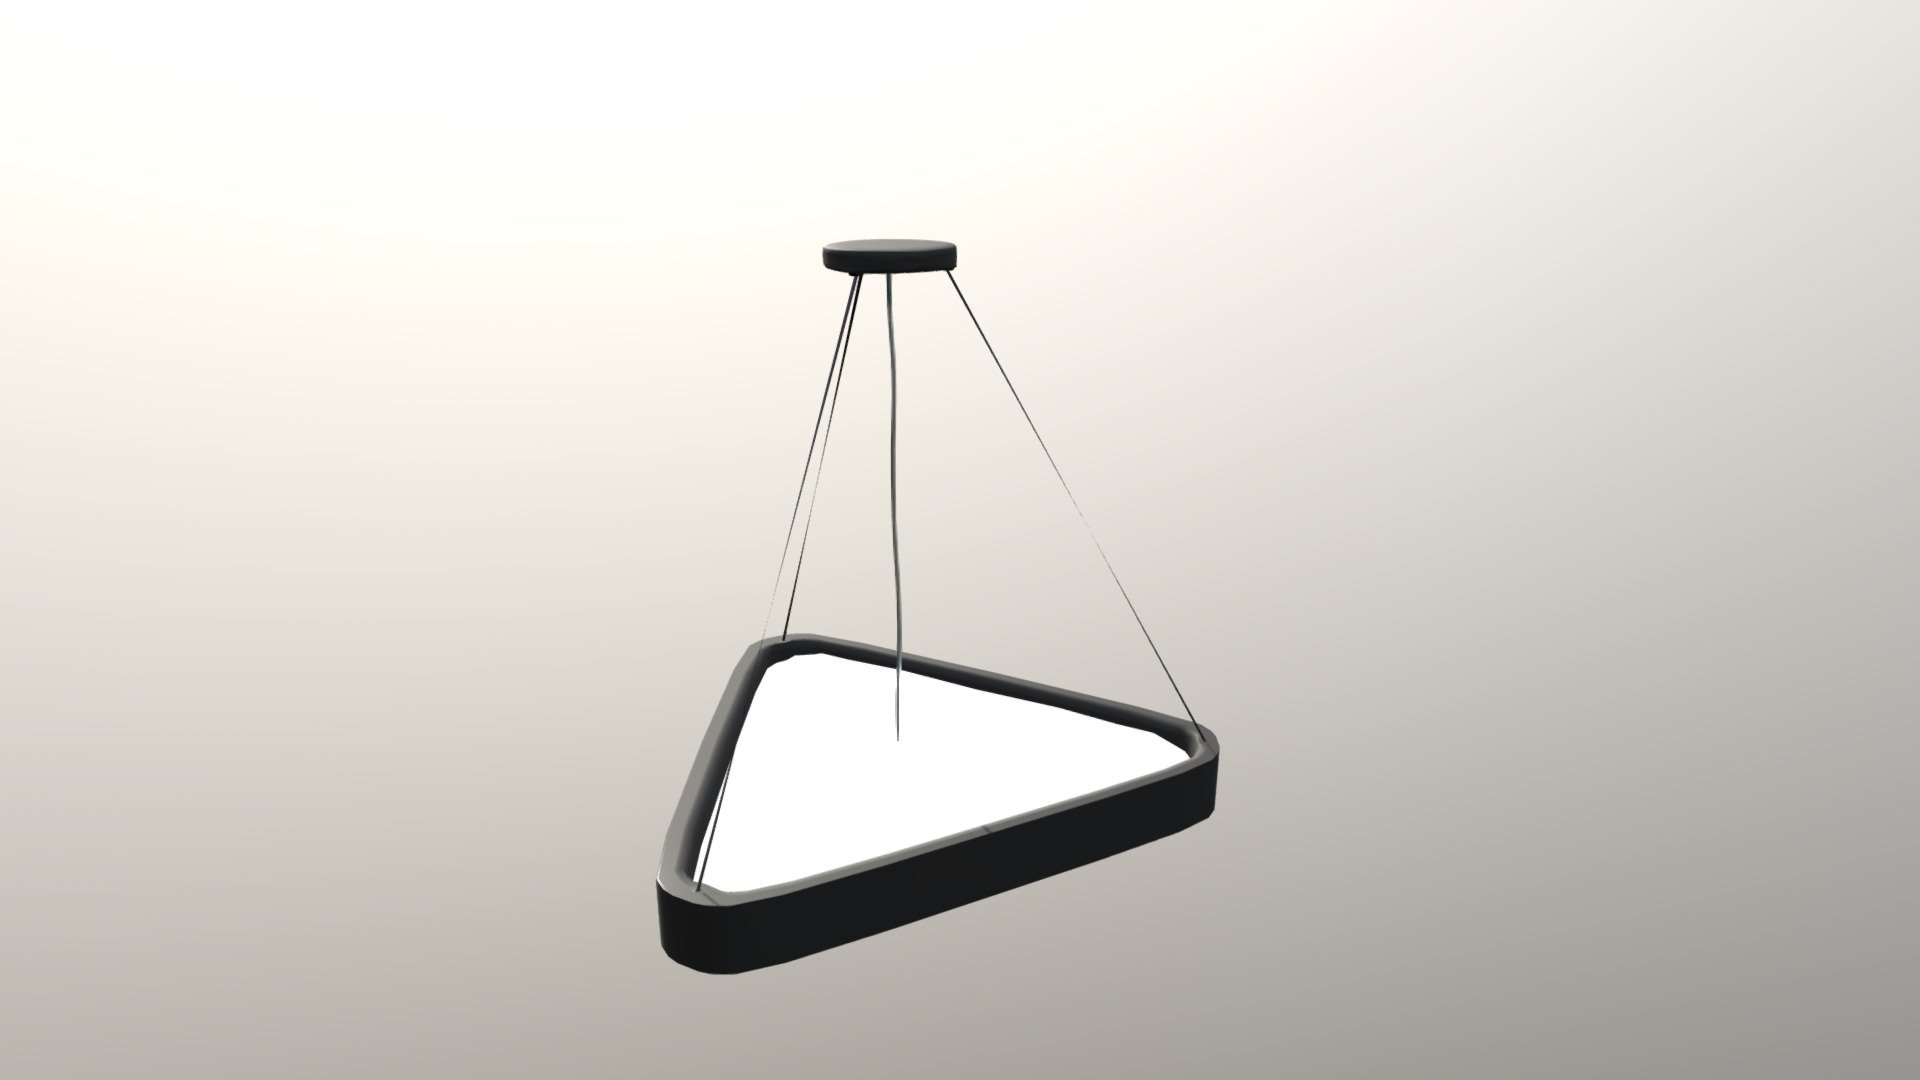 MIN 309 - Hanging Sci Fi Light Fixture - Hanging Scifi Light - 3D model by dylansparks 3d model